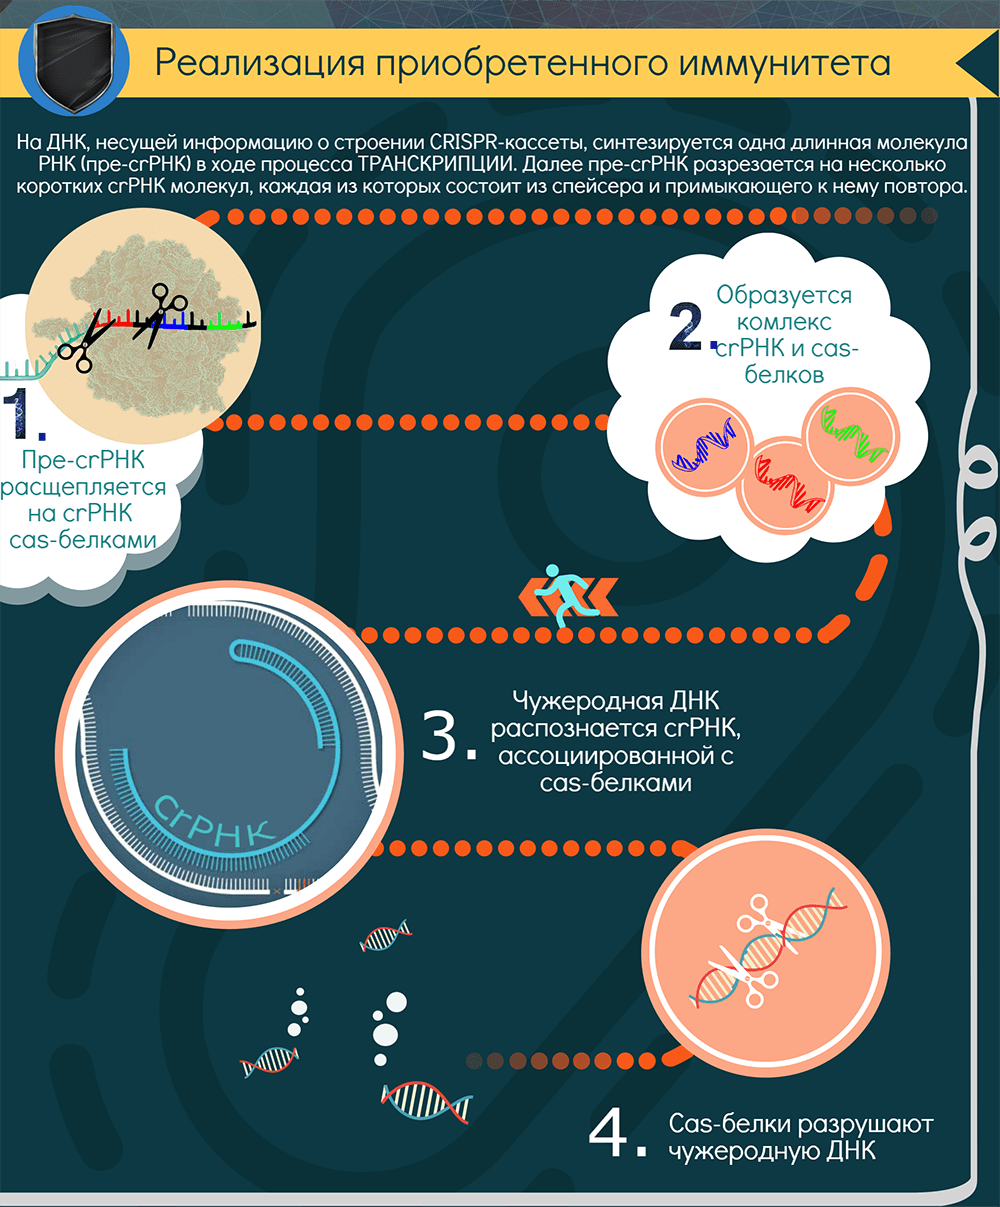 Инфографика о CRISPR/Cas